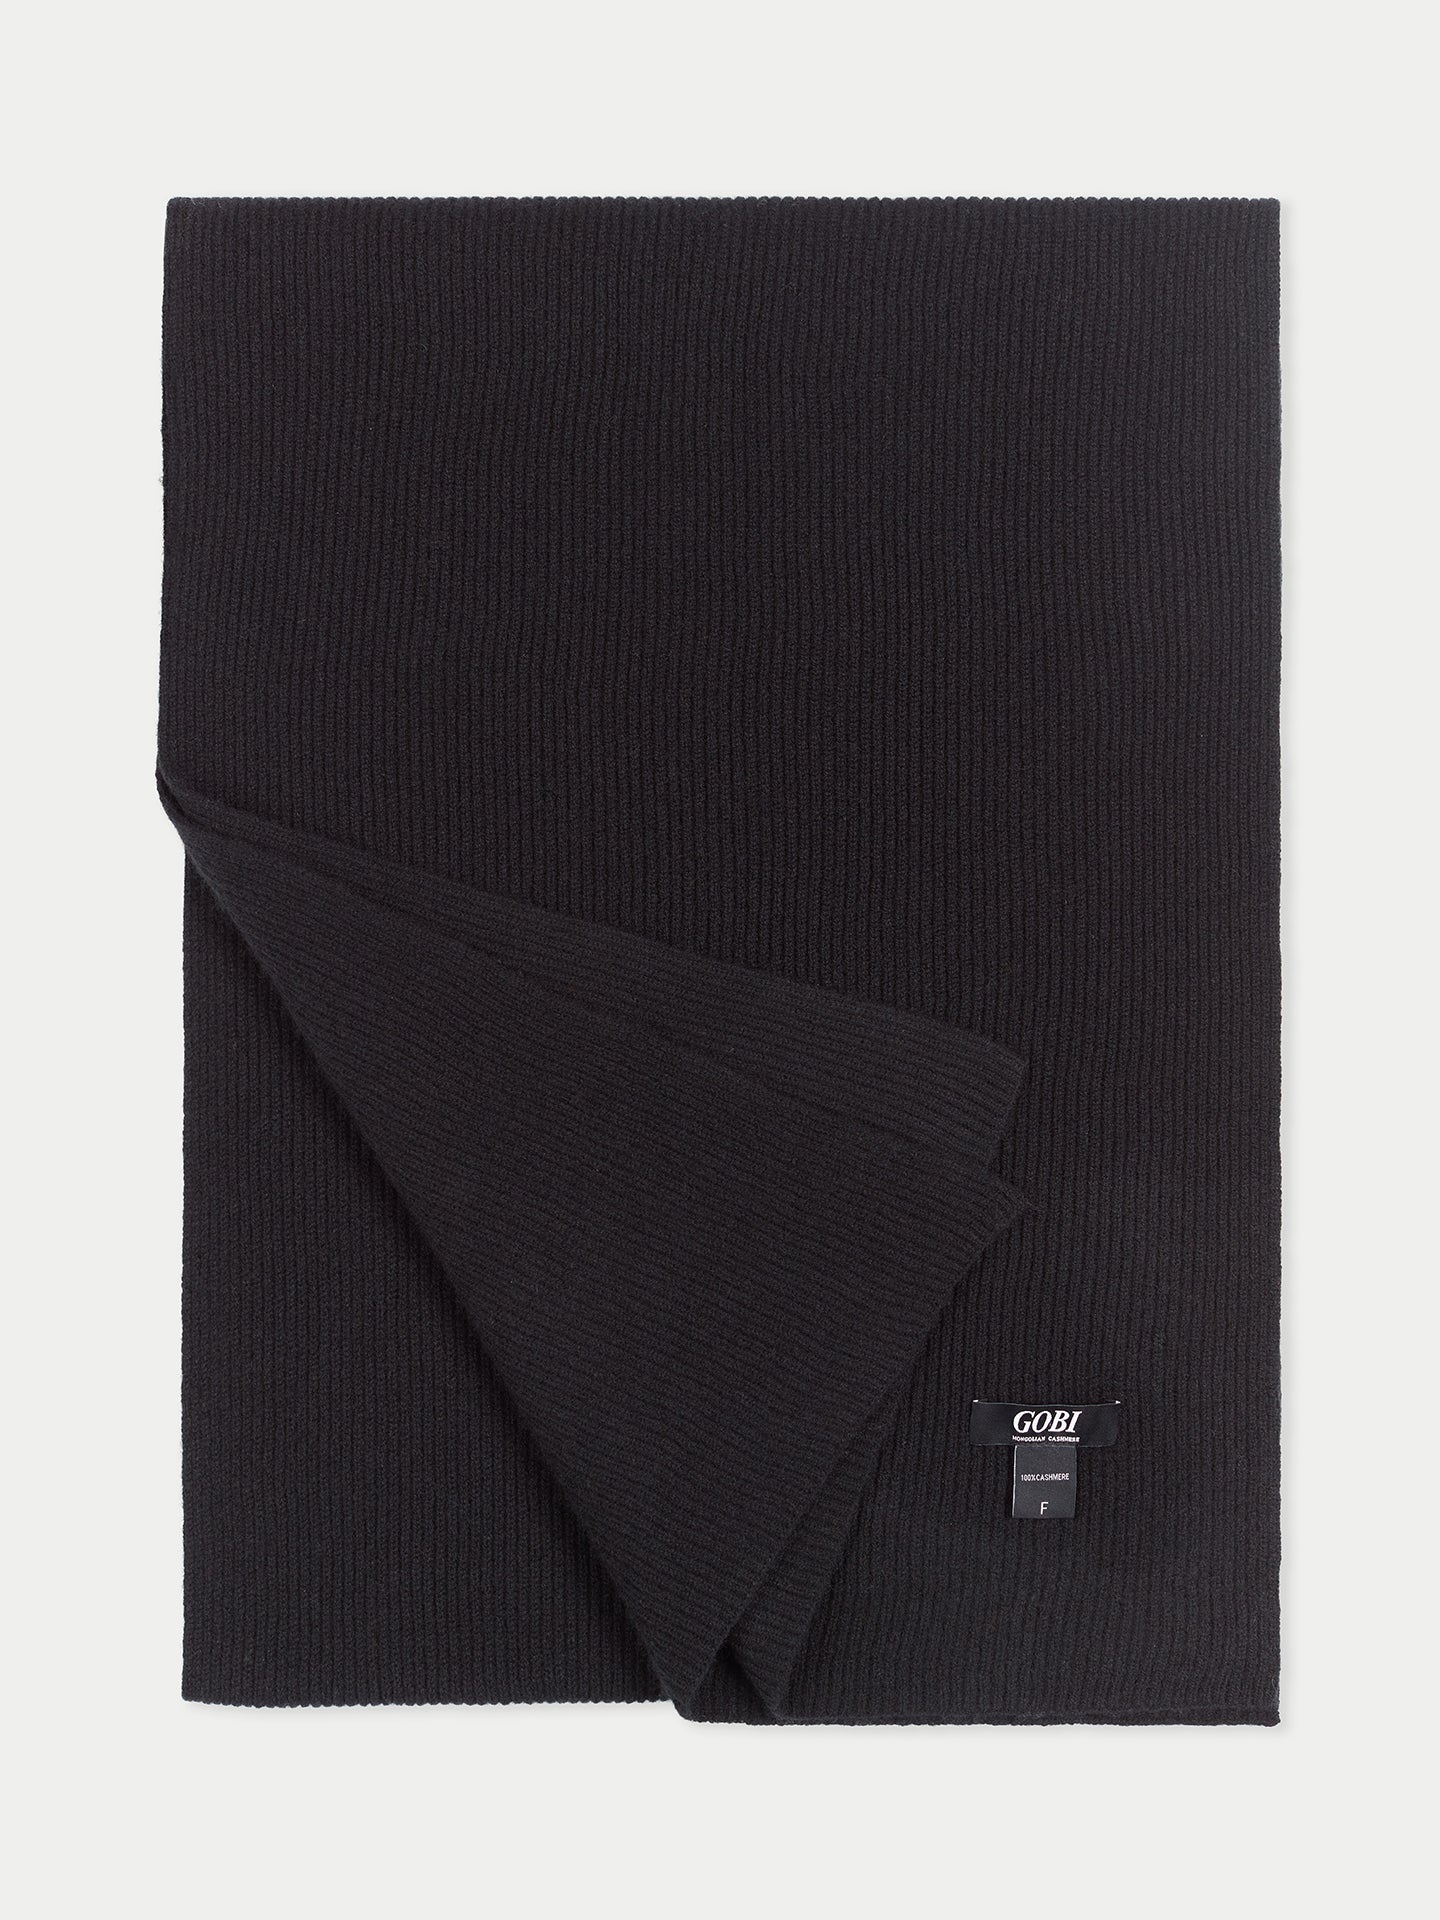 Unisex Oversized Cashmere Scarf Black - Gobi Cashmere